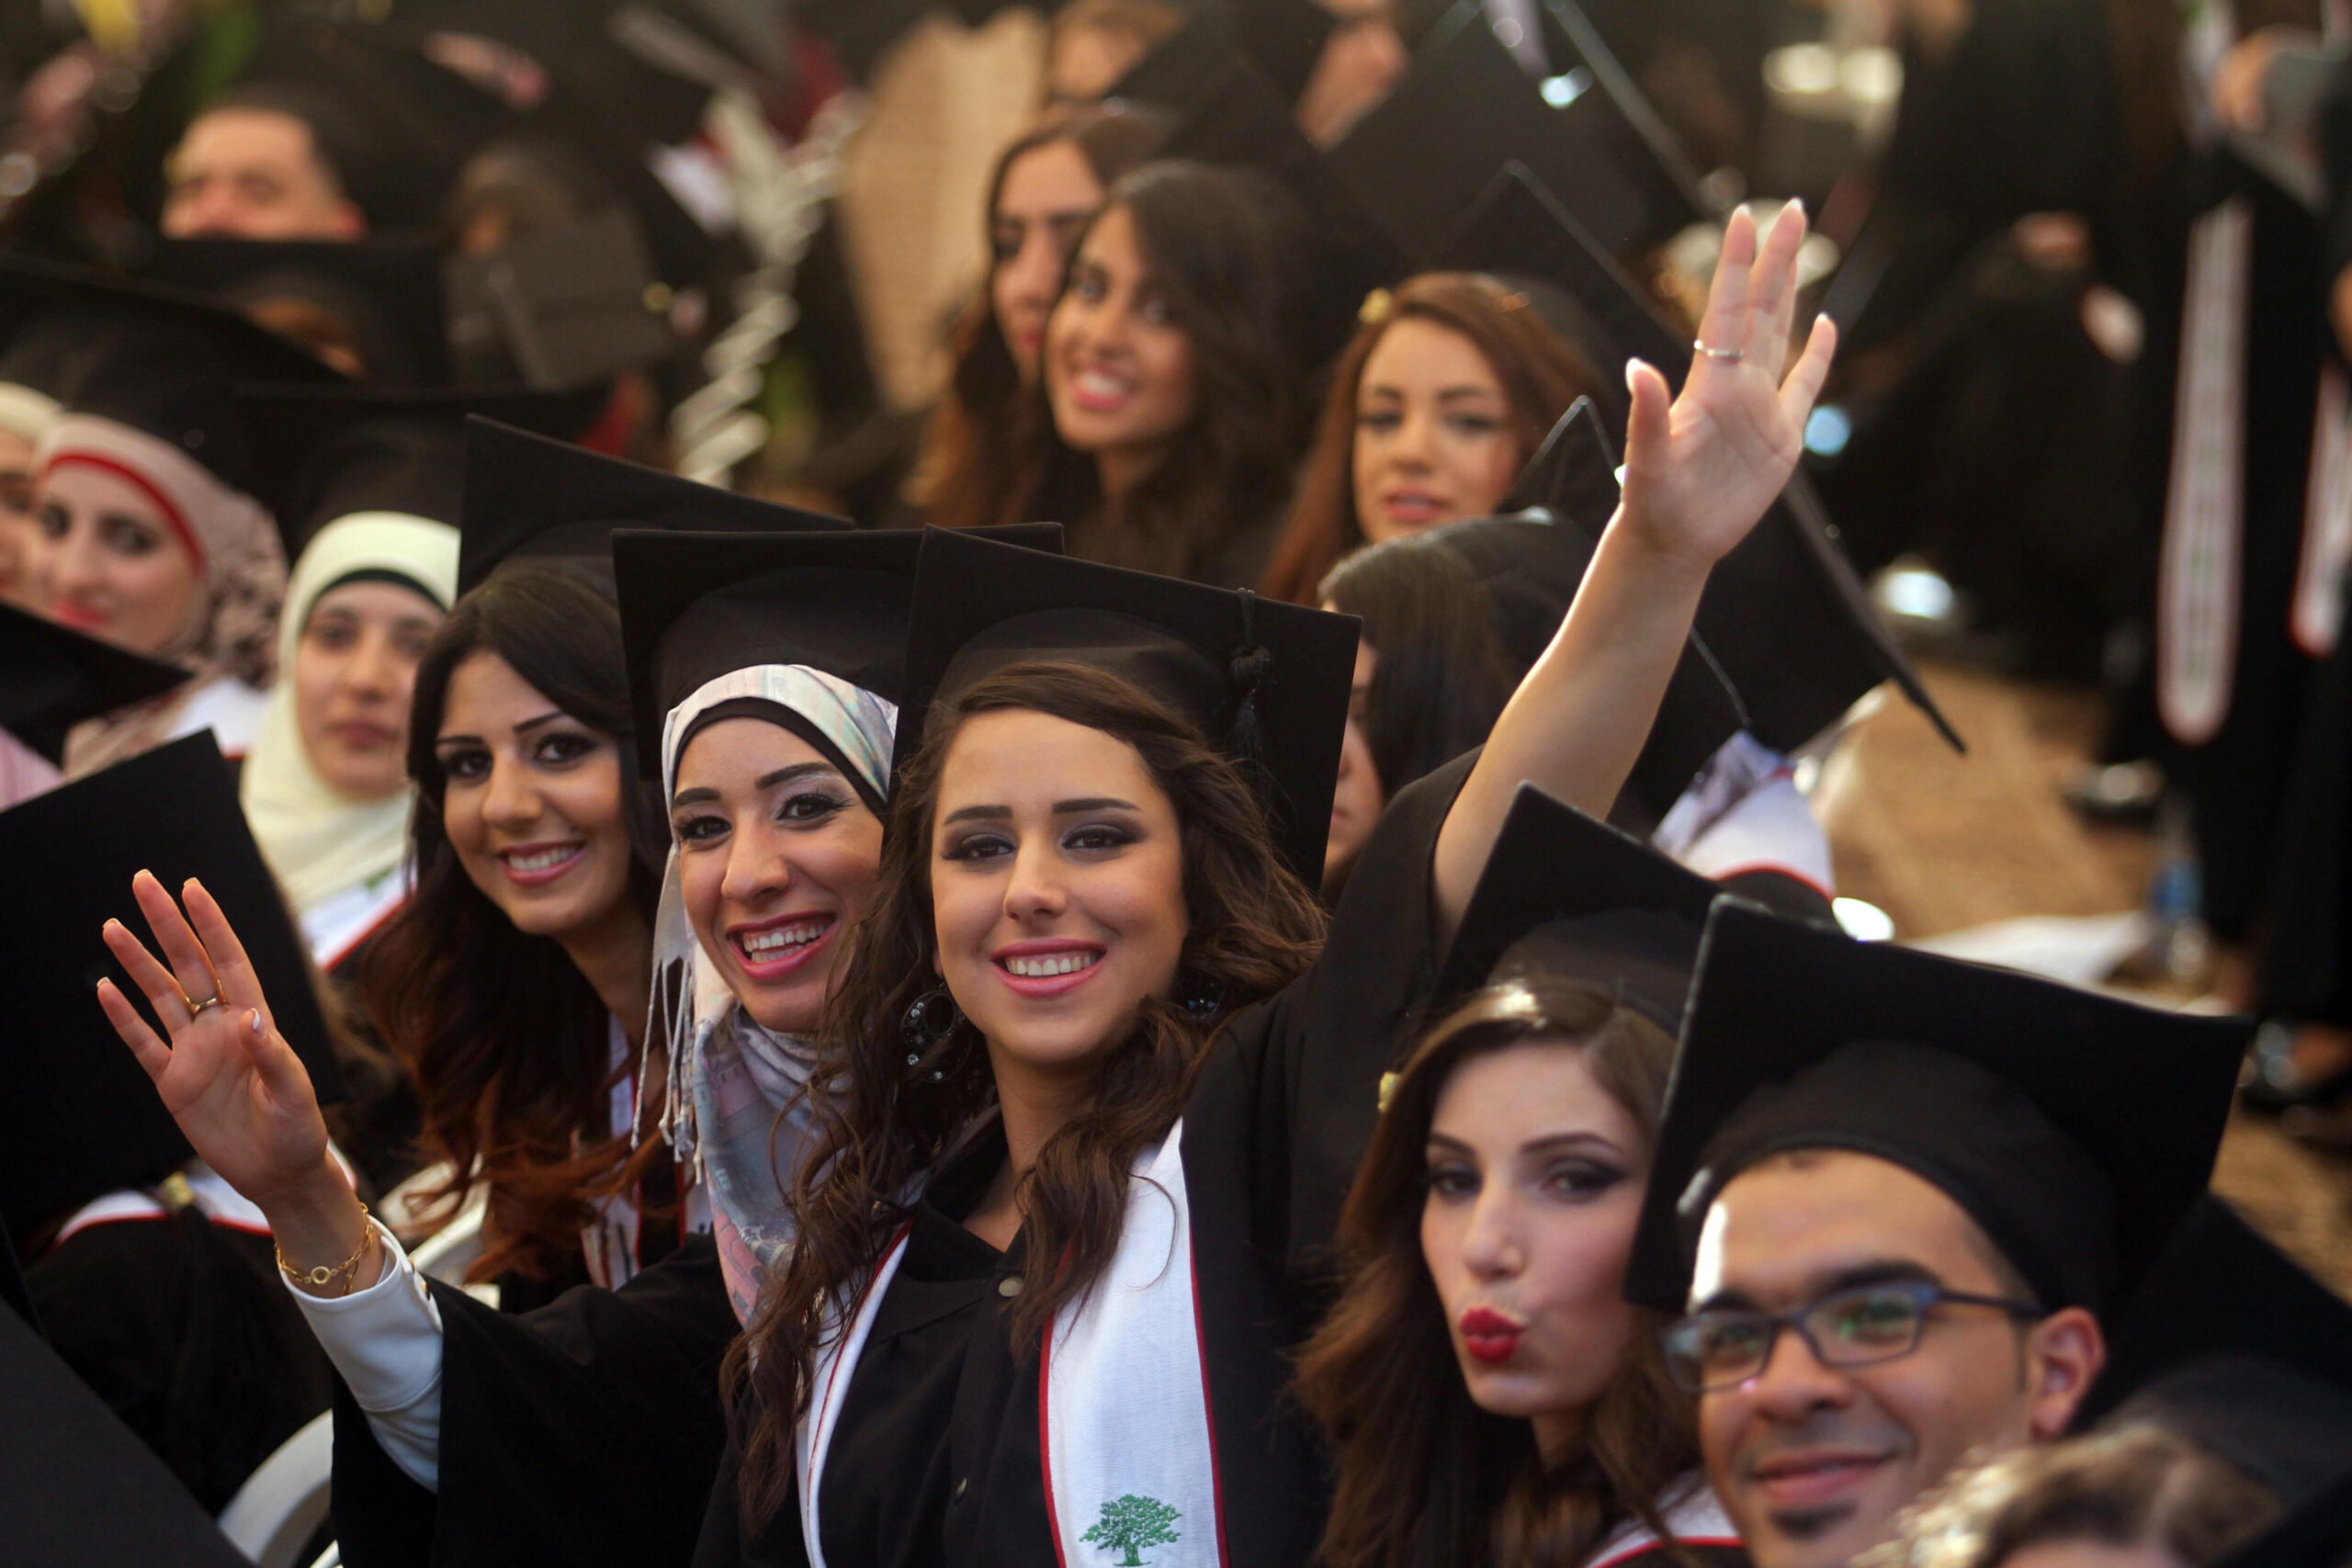 לאוניברסיטאות היה תקפיד מרכזי בתנועה הלאומית הפלסטינית. סטודנטיות בטקס סיום הלימודים באוניברסיטת ביר זית, יוני 2014 (צילום: עיסאם רימאאוי / פלאש 90)